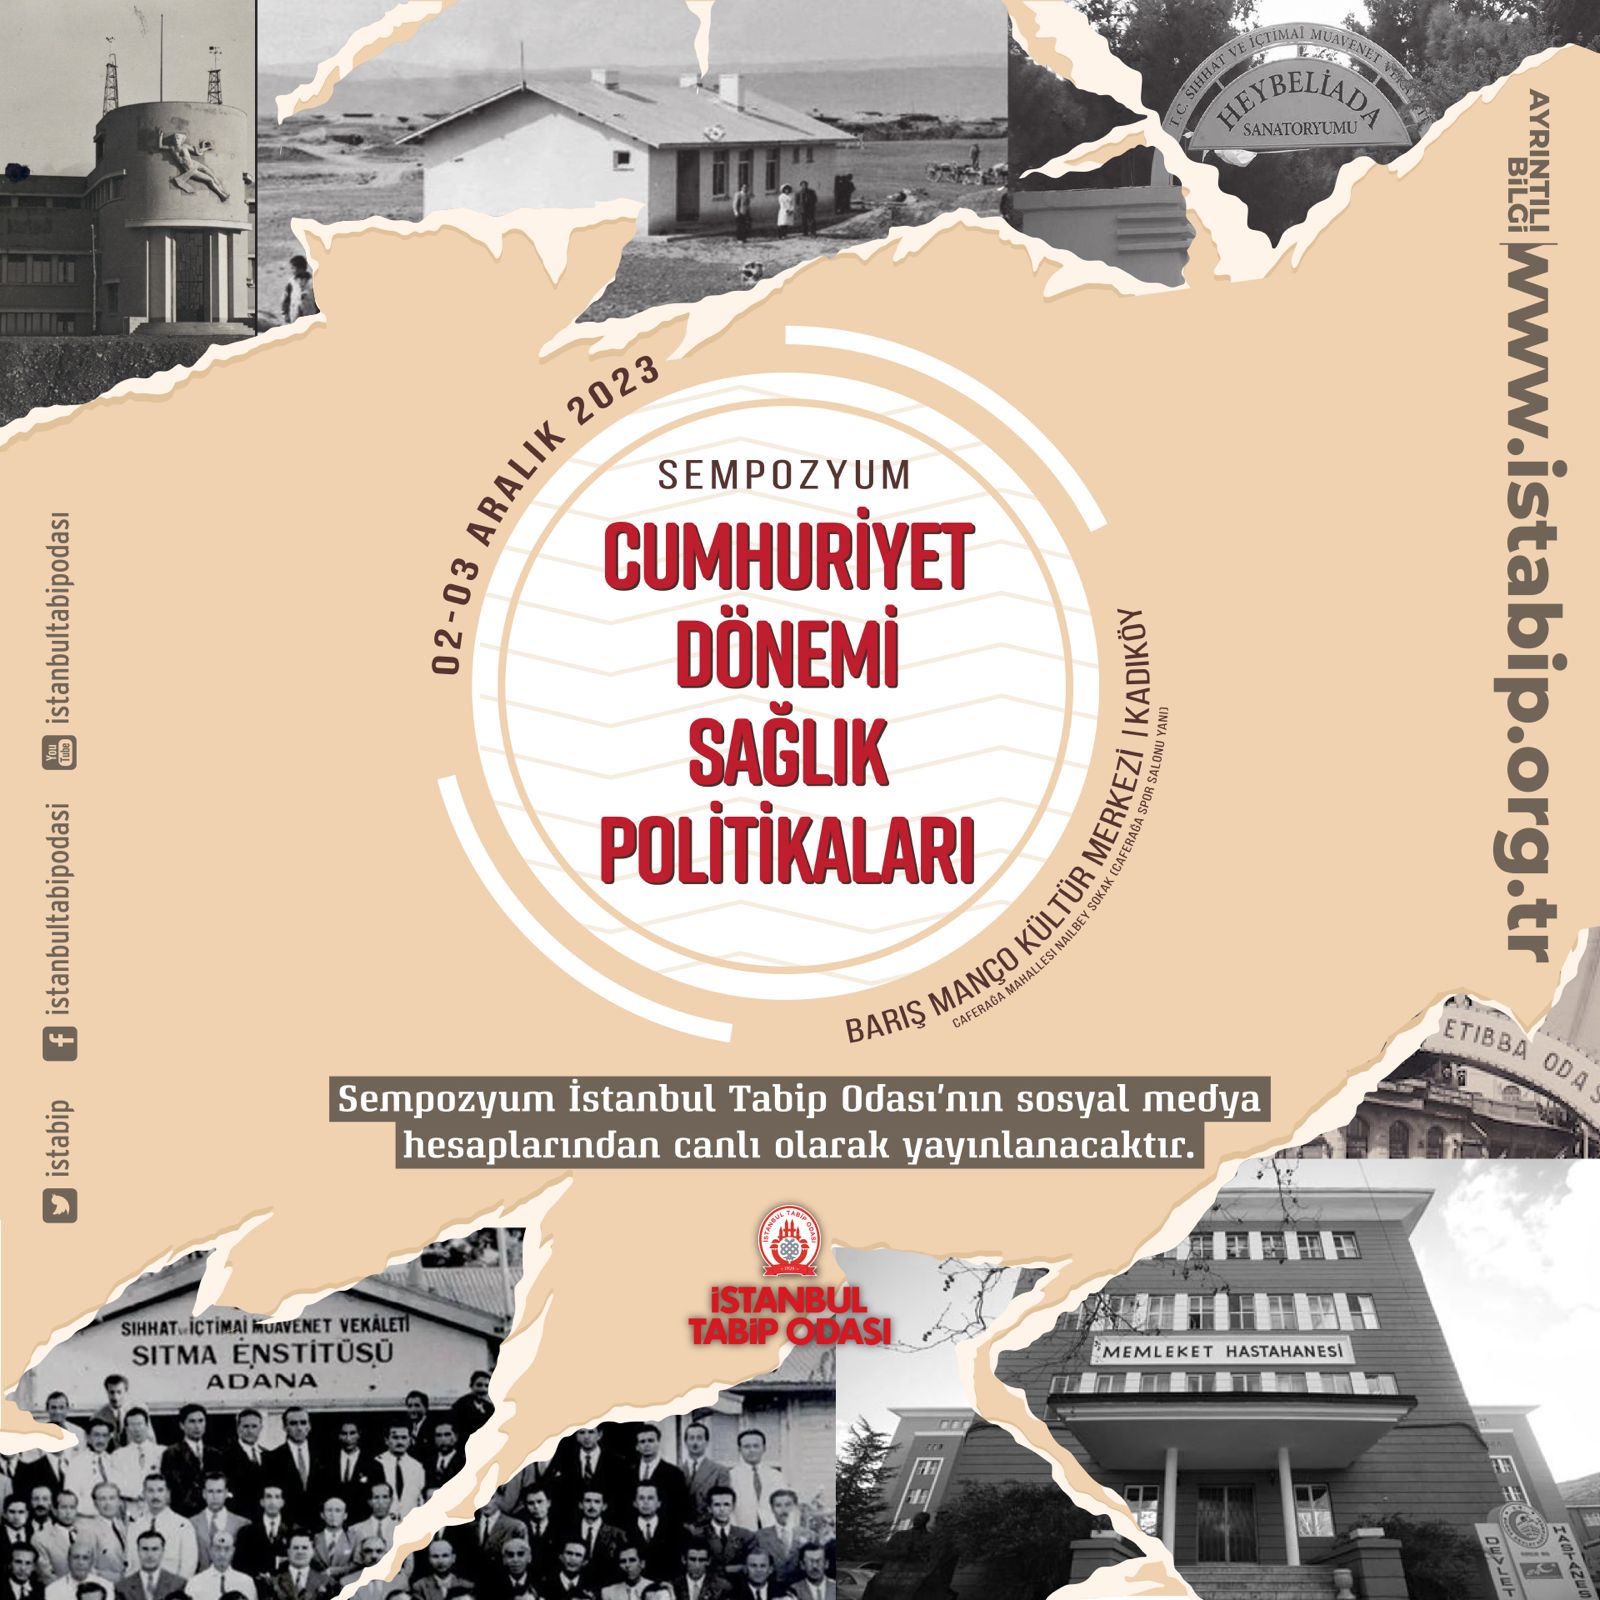 İstanbul Tabip Odası Cumhuriyet Dönemi Sağlık Politikaları Sempozyumu